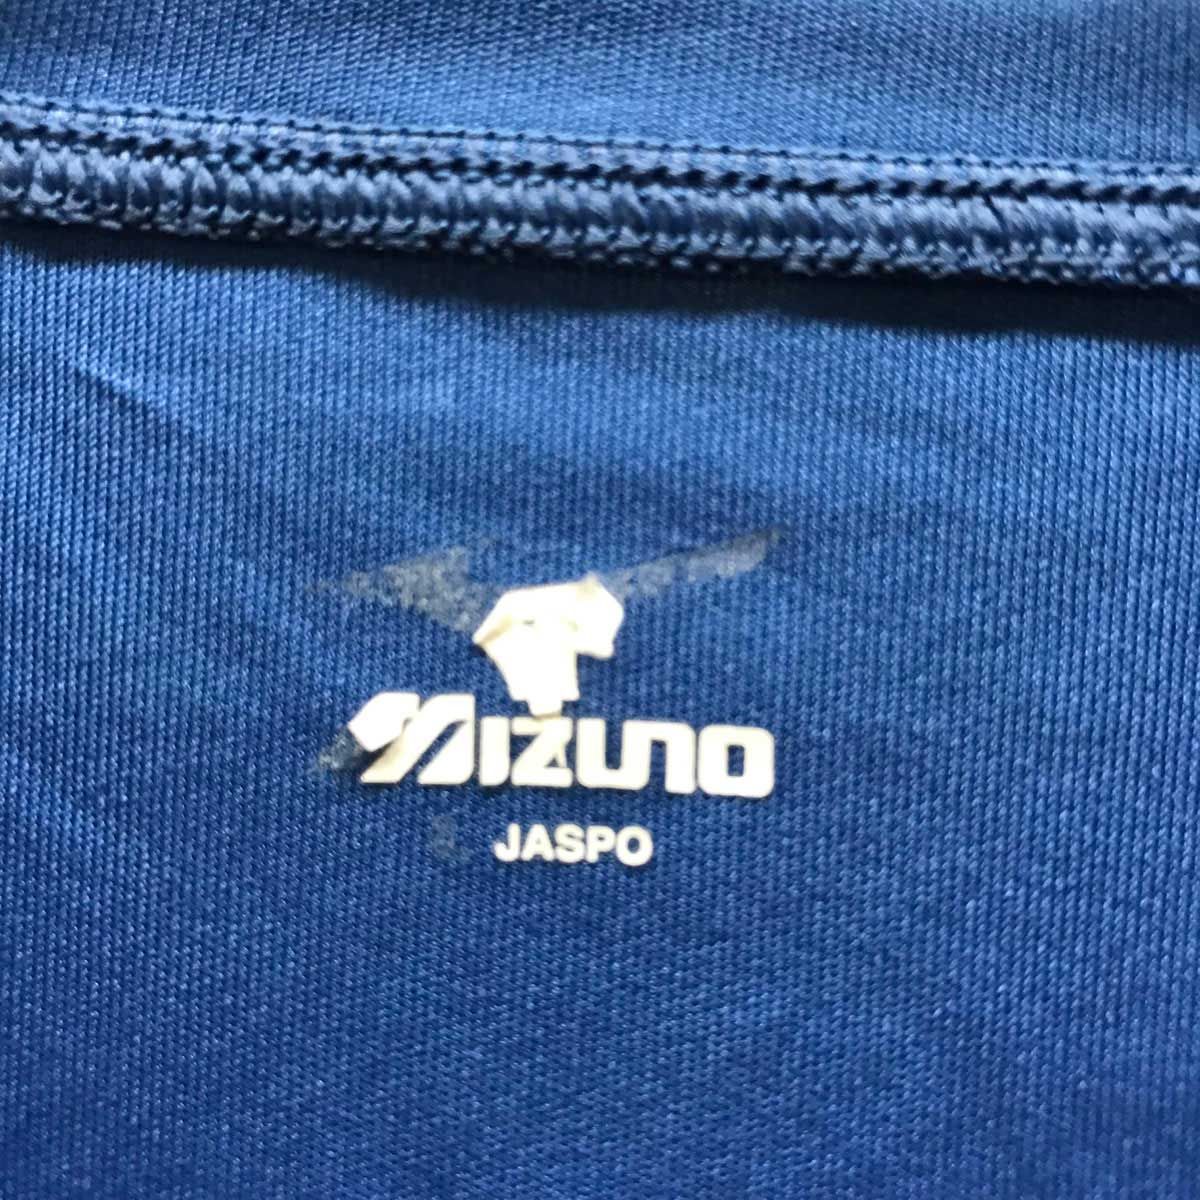 ミズノ プラシャツ 半袖シャツ Lブルー  A67TF-214 メンズ MIZUNO サッカーウェア スポーツ